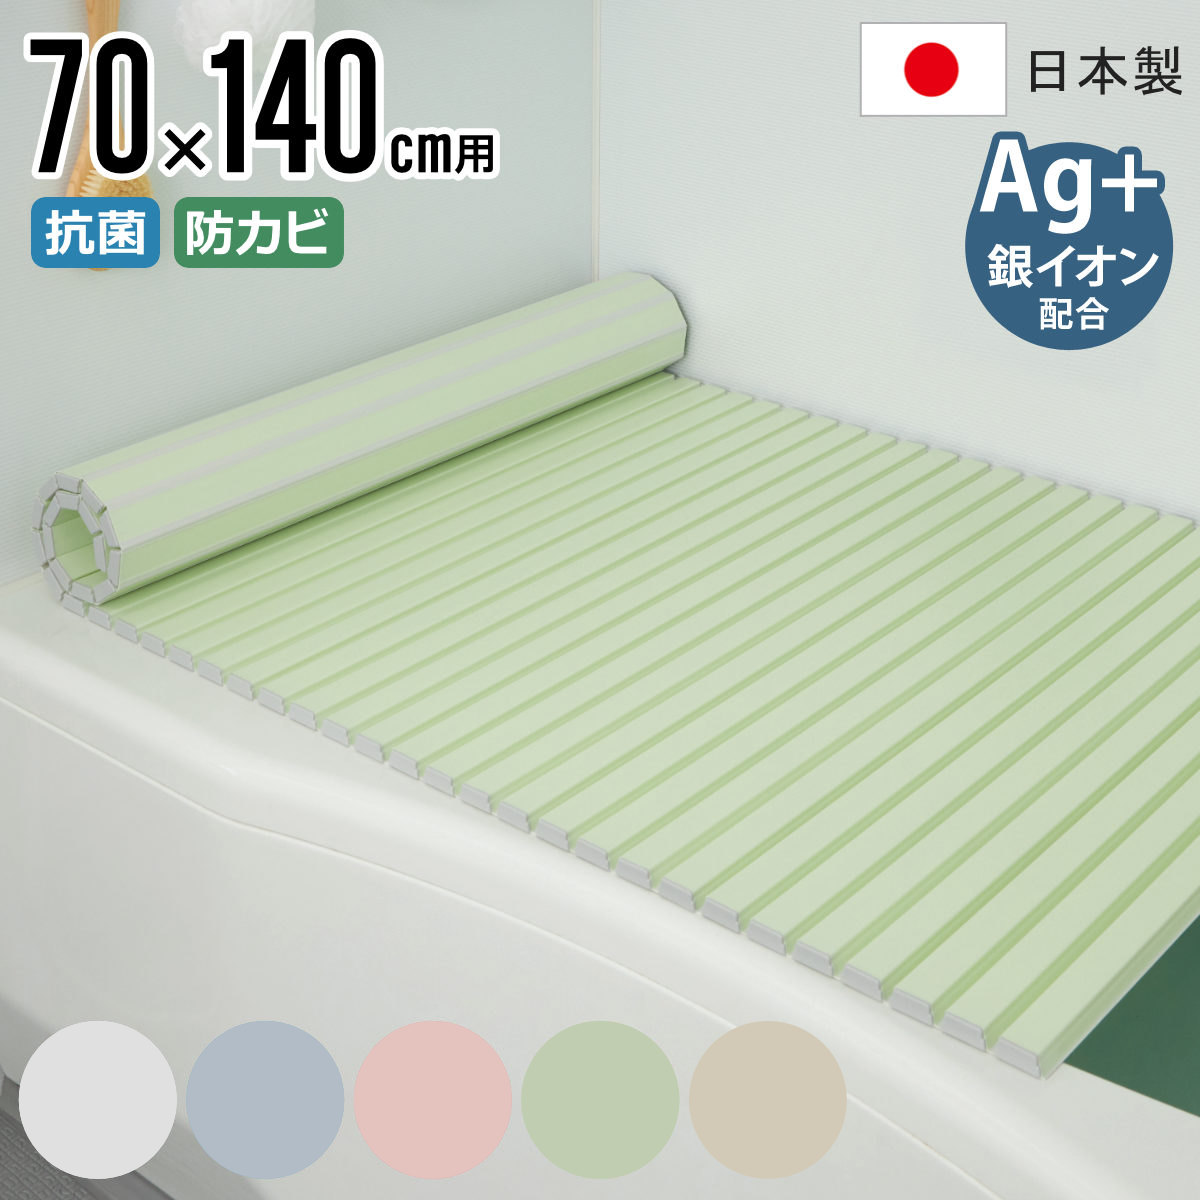 風呂ふた シャッター Ag抗菌 日本製 70×140cm 用 M-14 実寸70×142.5cm